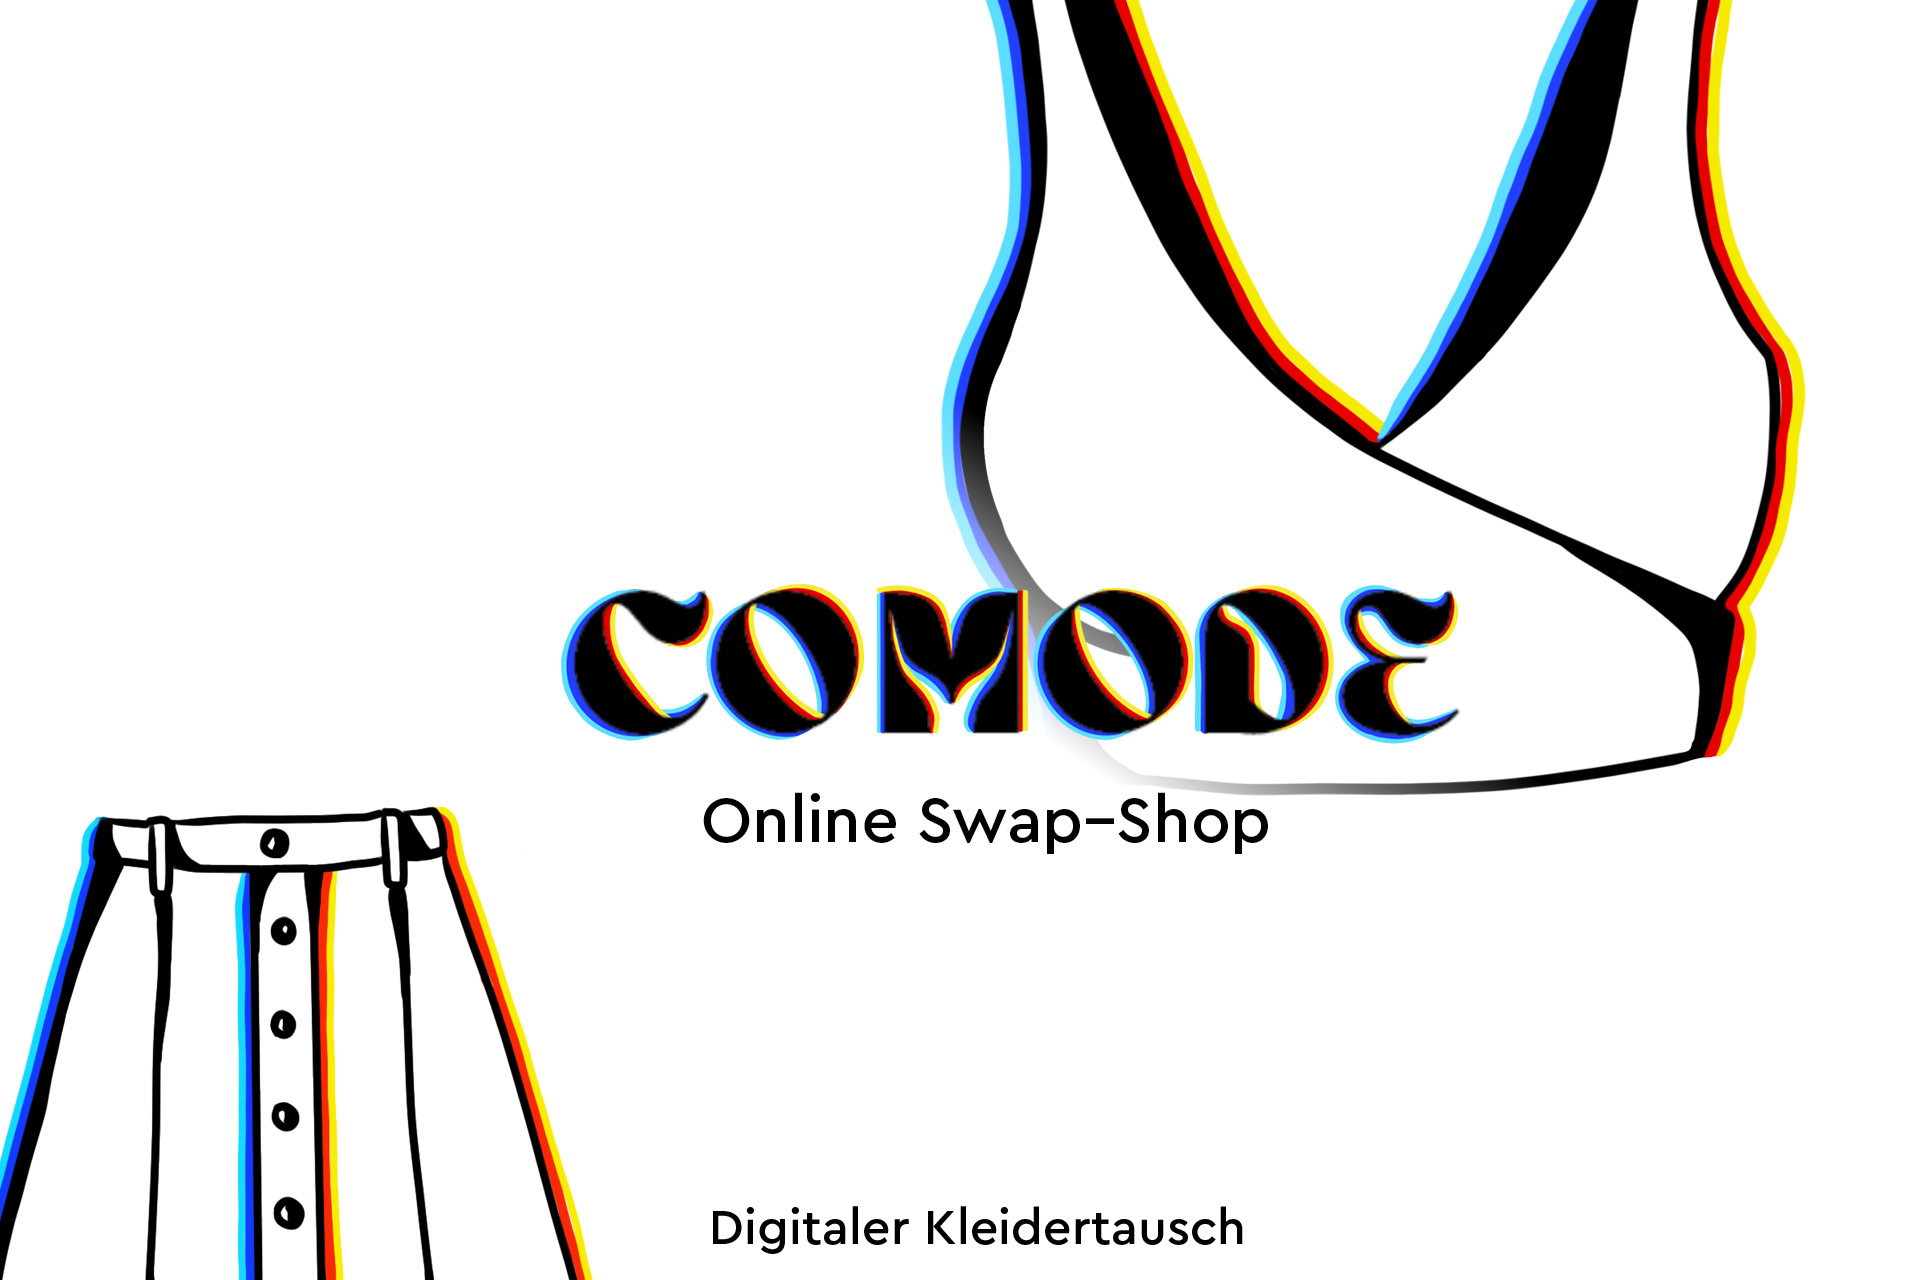 Comode - swap shop